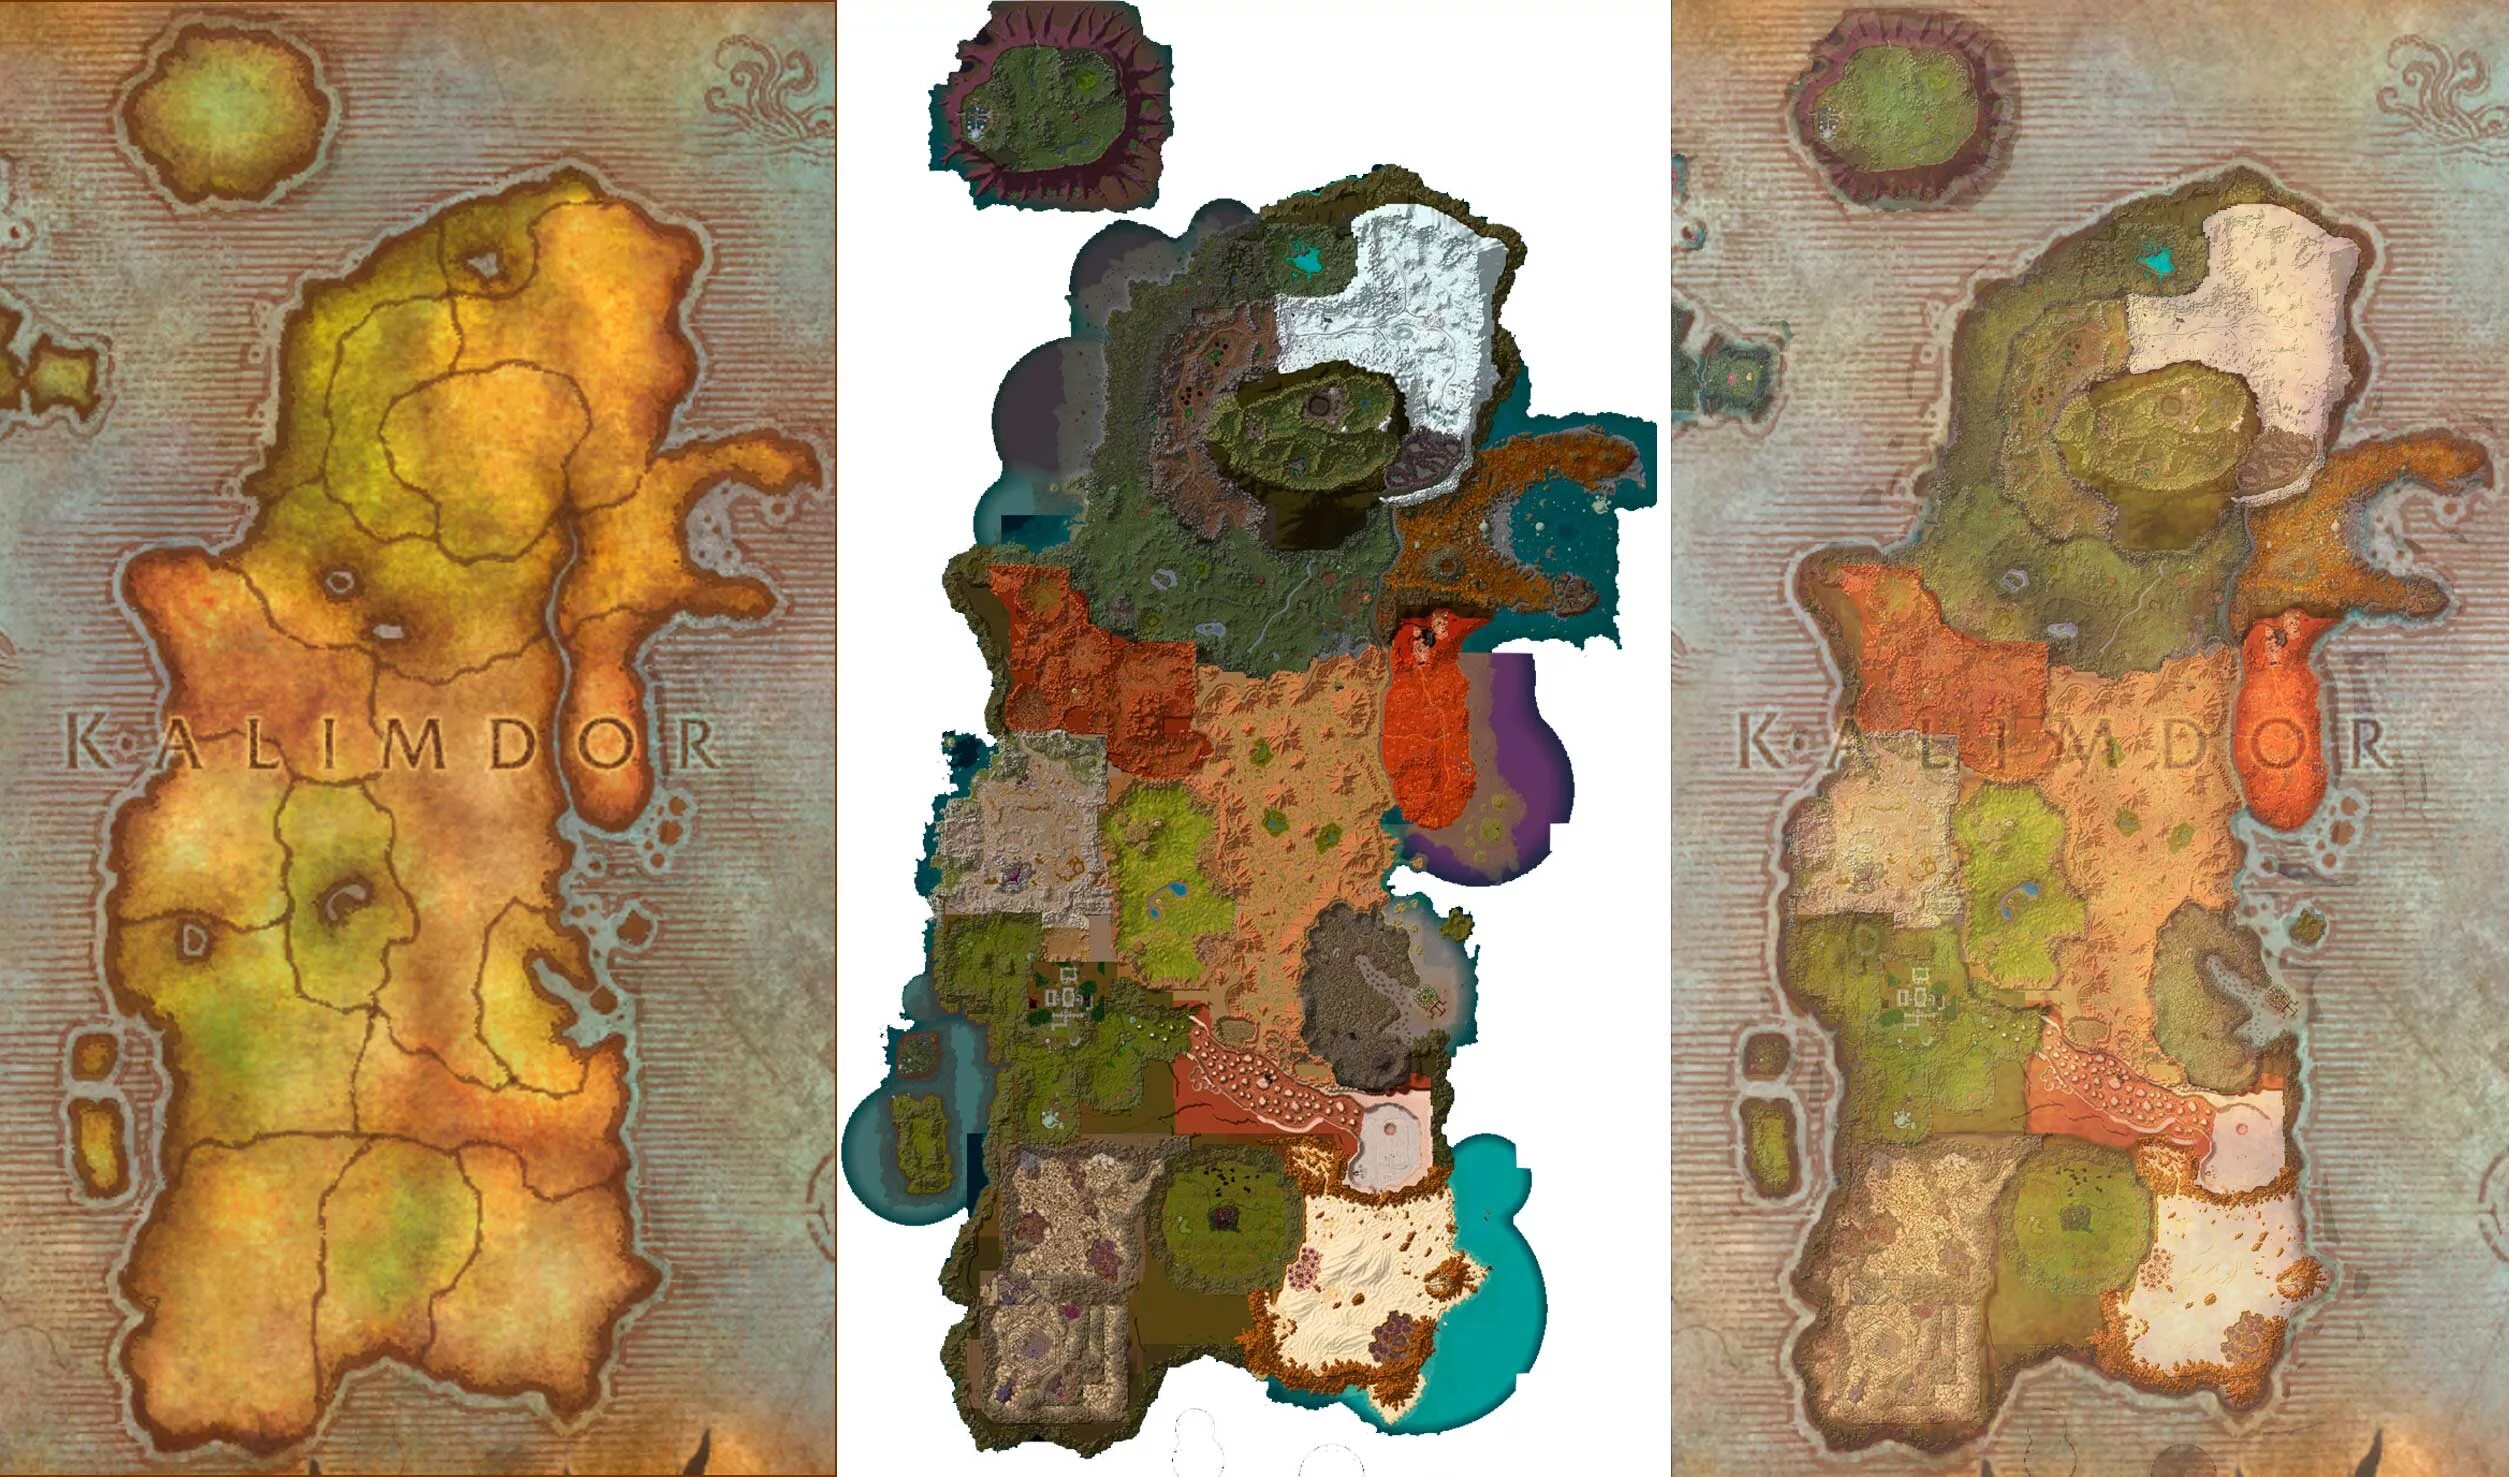 Калимдор варкрафт. Карта Калимдора 3.3.5. Карта Калимдора wow 3.3.5. Warcraft восточные королевства.